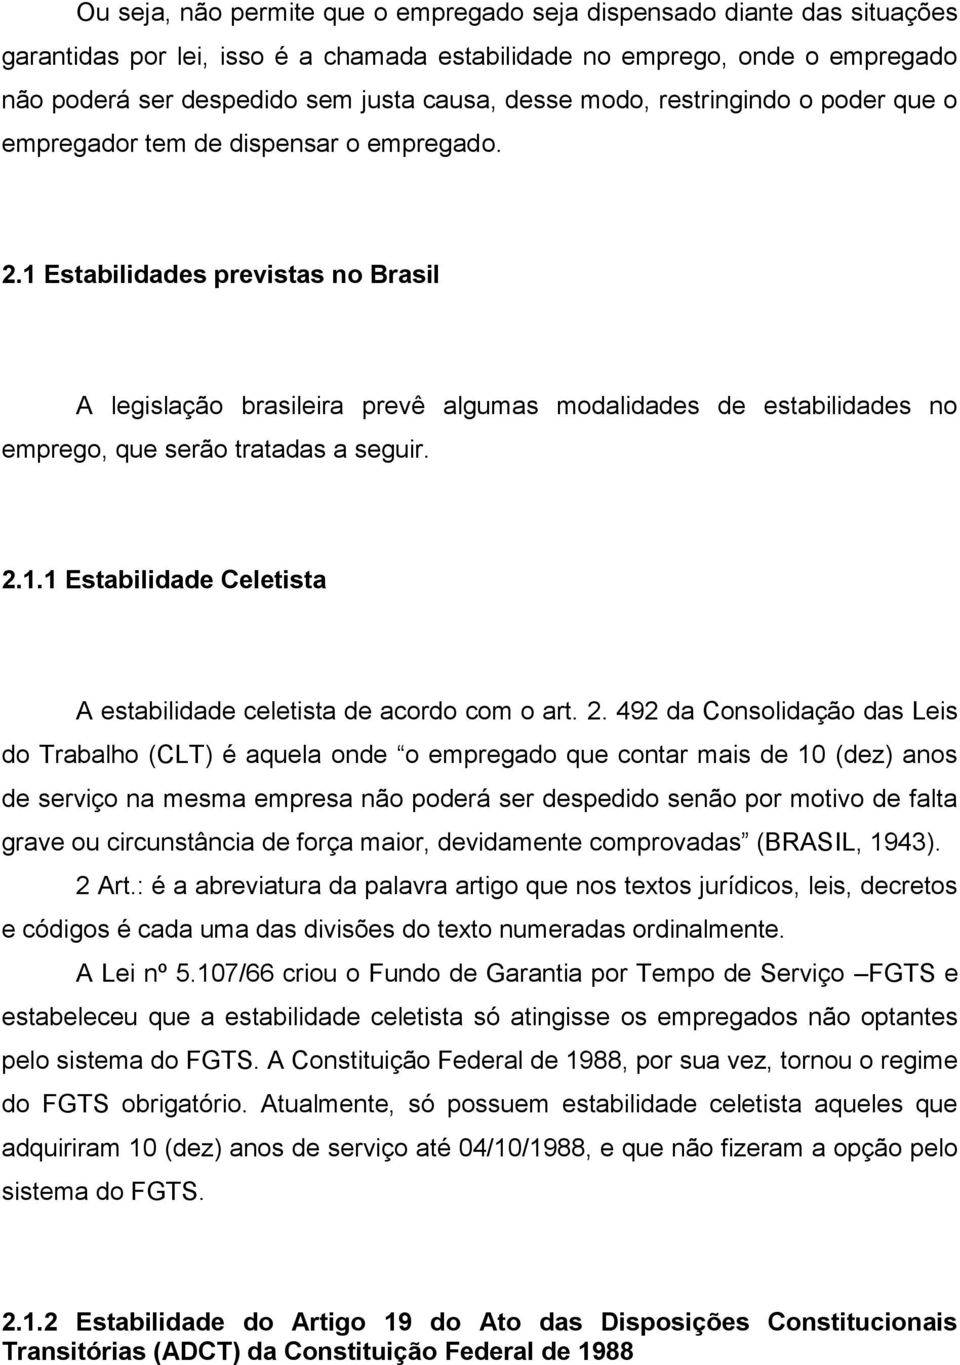 1 Estabilidades previstas no Brasil A legislação brasileira prevê algumas modalidades de estabilidades no emprego, que serão tratadas a seguir. 2.1.1 Estabilidade Celetista A estabilidade celetista de acordo com o art.